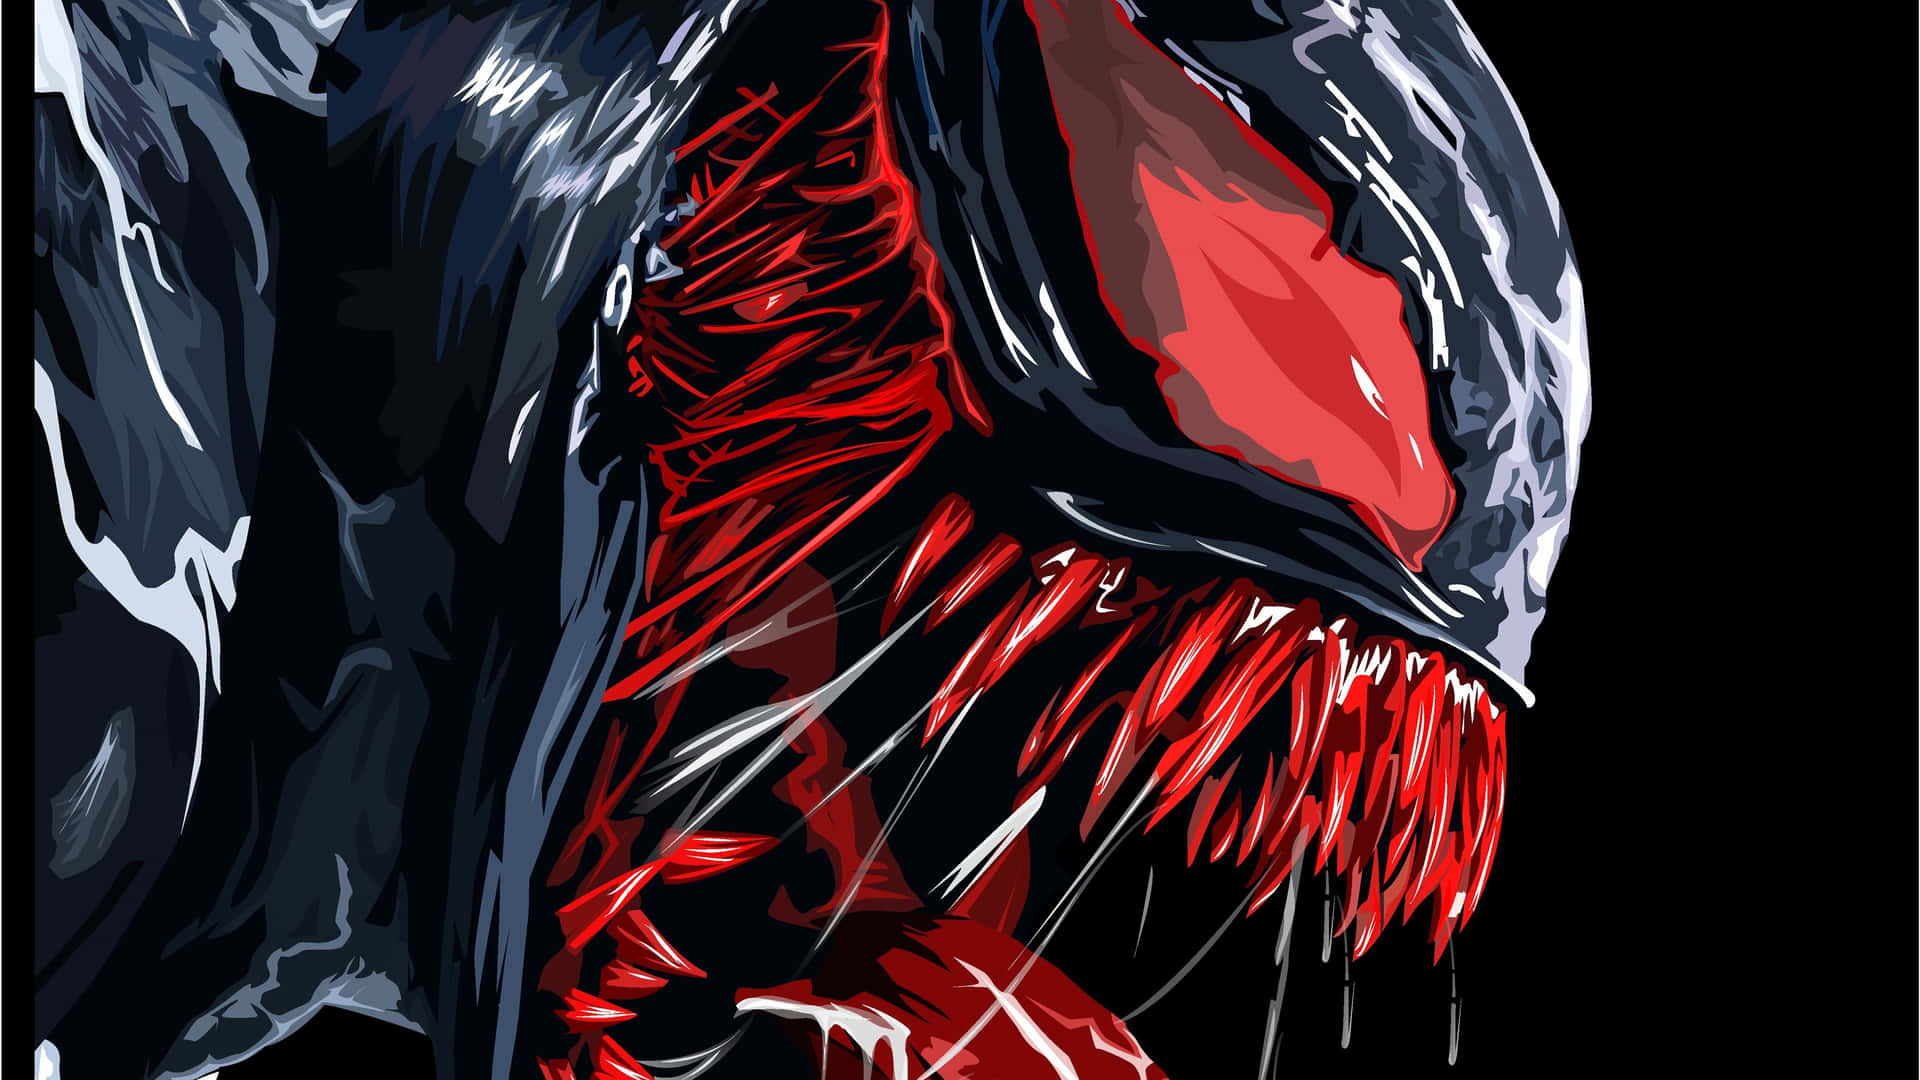 Abstrakt illustration af anti-helten Venom fra Marvel Universet. Wallpaper